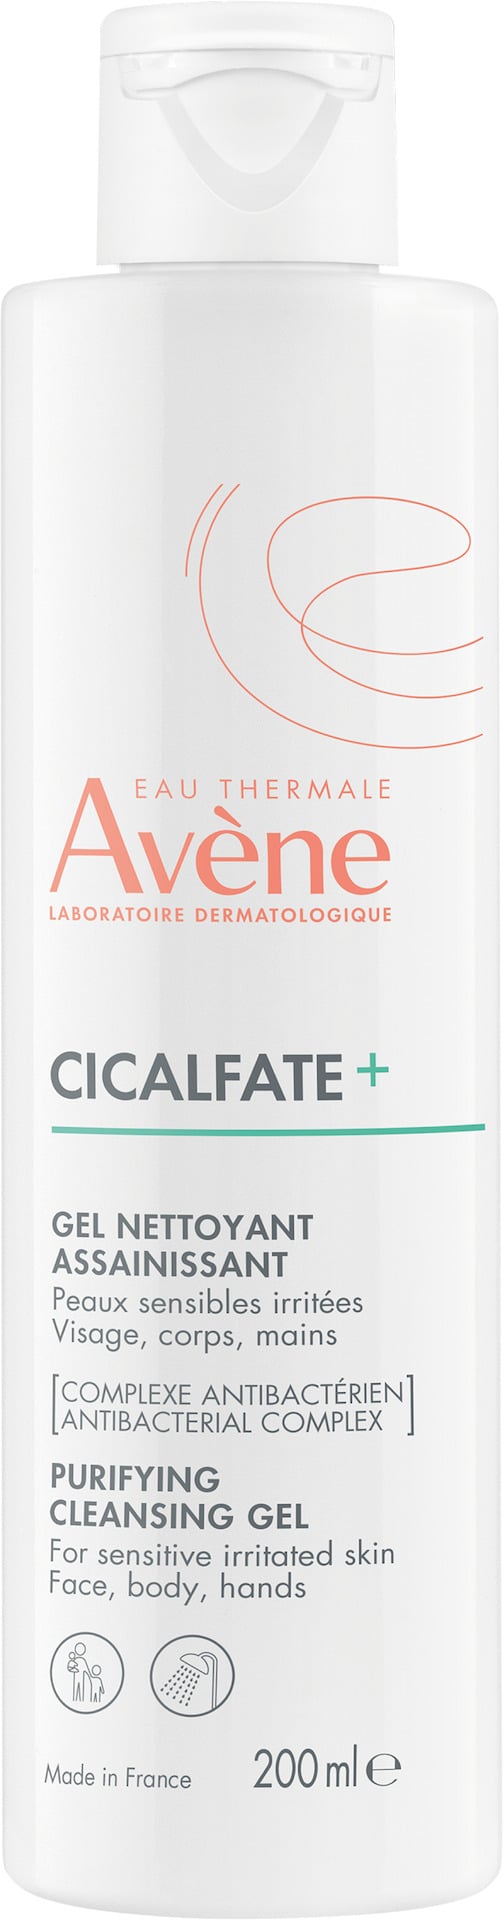 Avène Cicalfate+ Cleanser 200ml